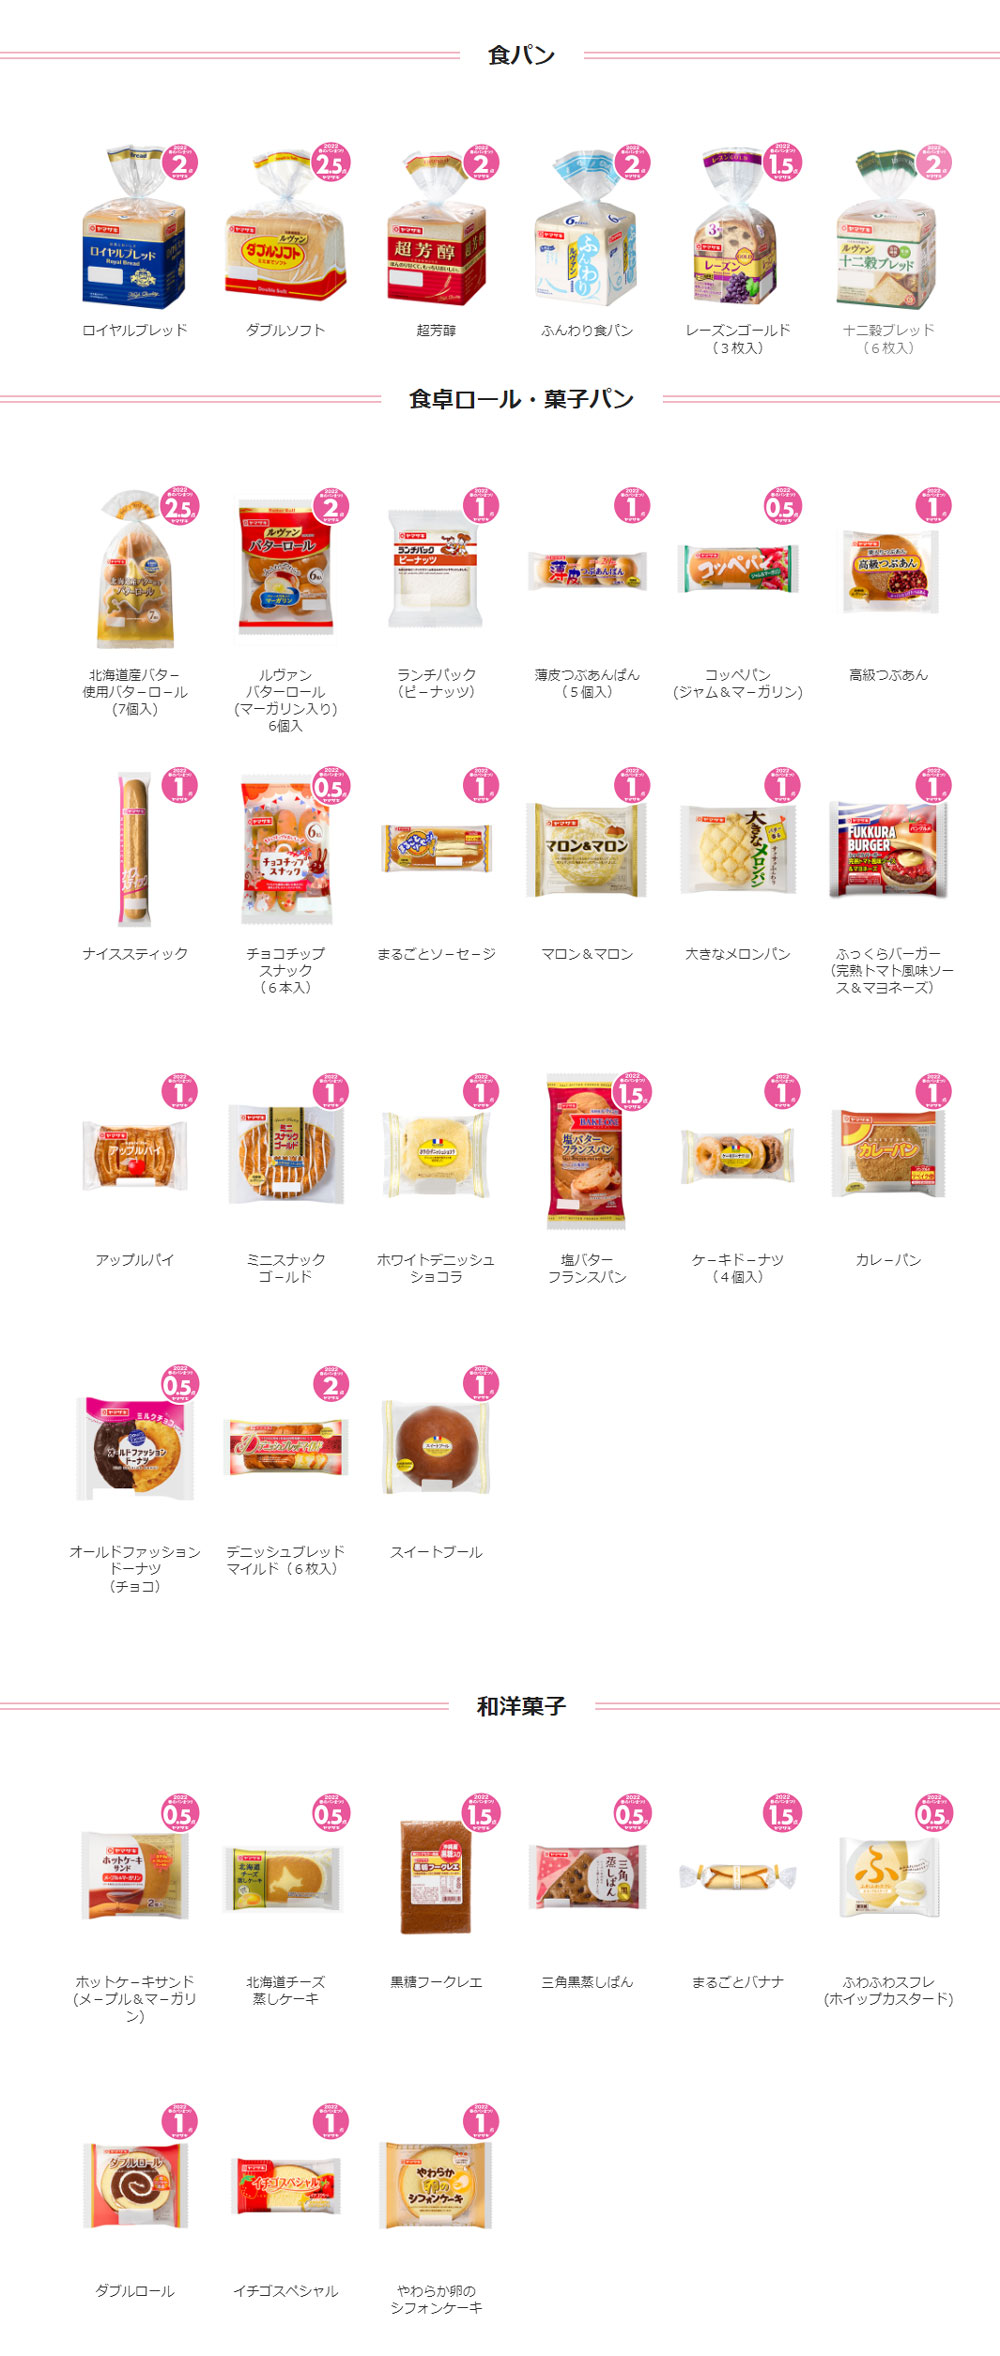 ヤマザキ春のパンまつり2022 白いお皿キャンペーン 対象商品